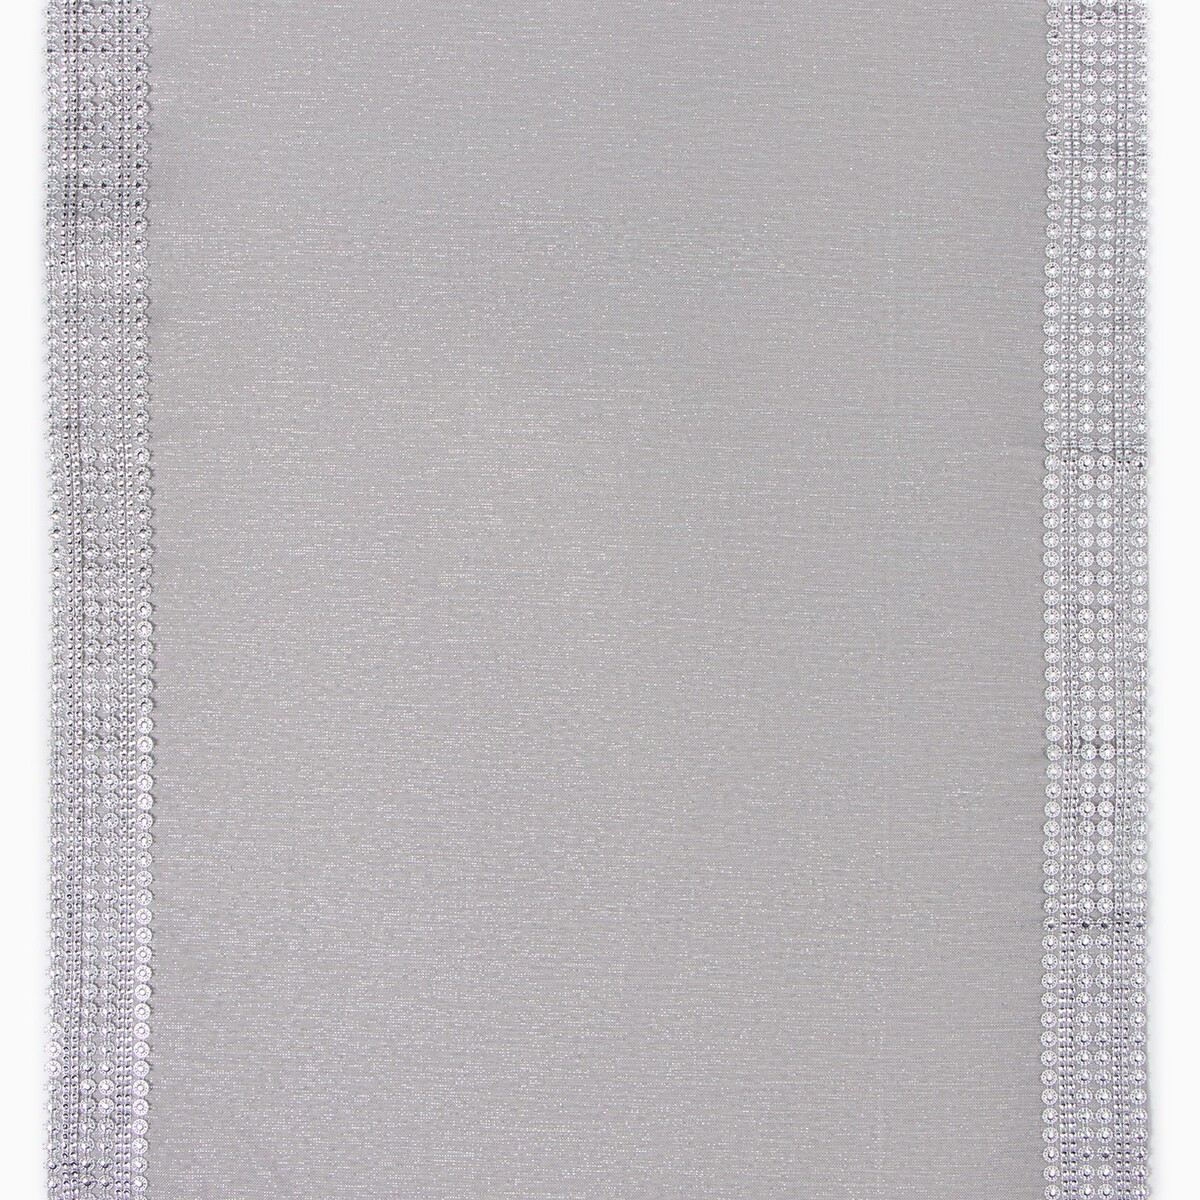 Дорожка Этель, цвет серый, размер 50х100 см 06289846 - фото 4